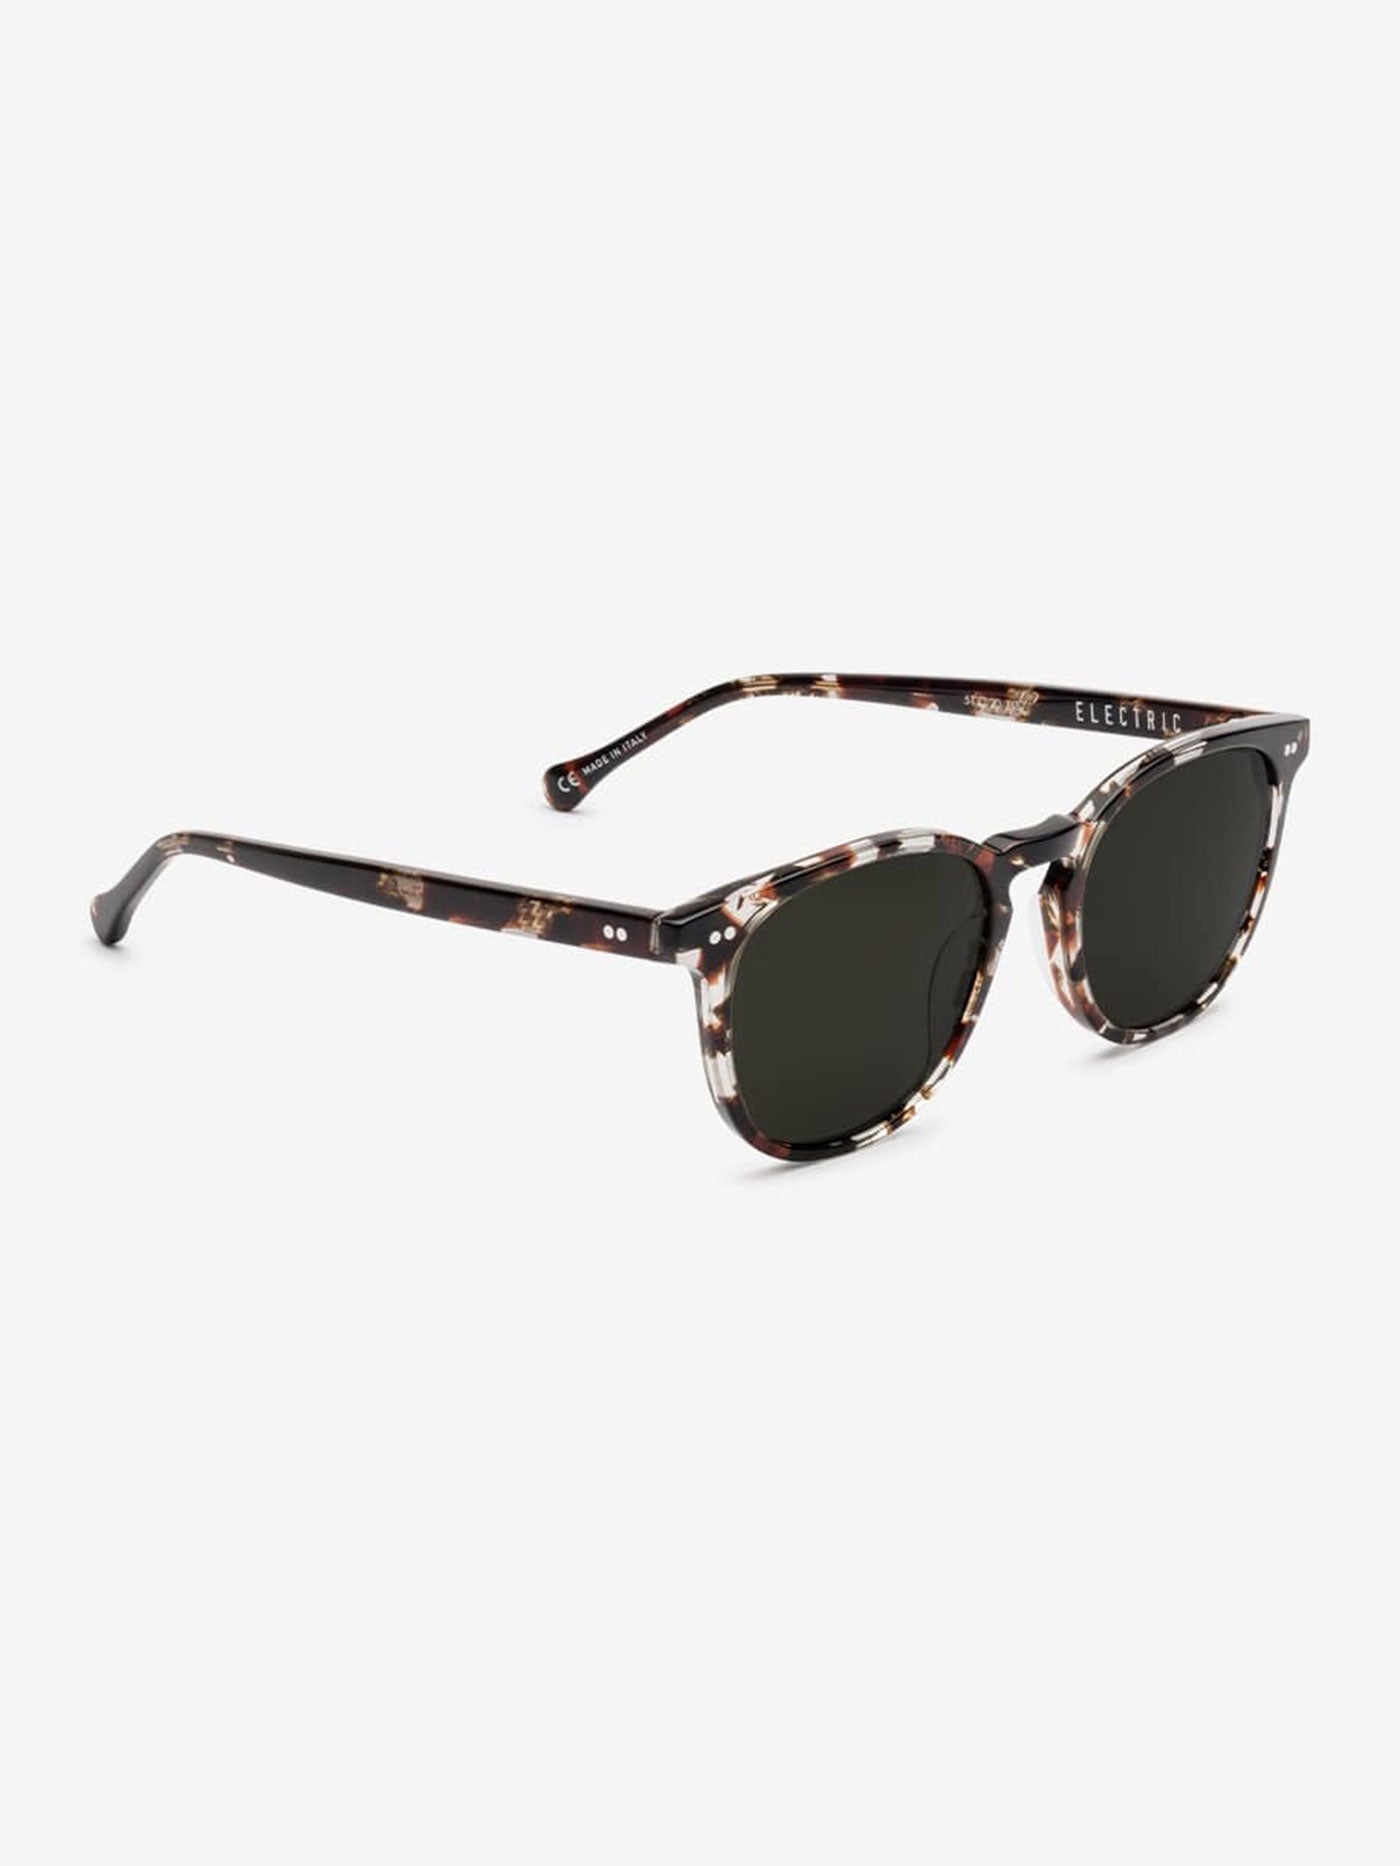 Electric Oak Moab Tortoise Sunglasses